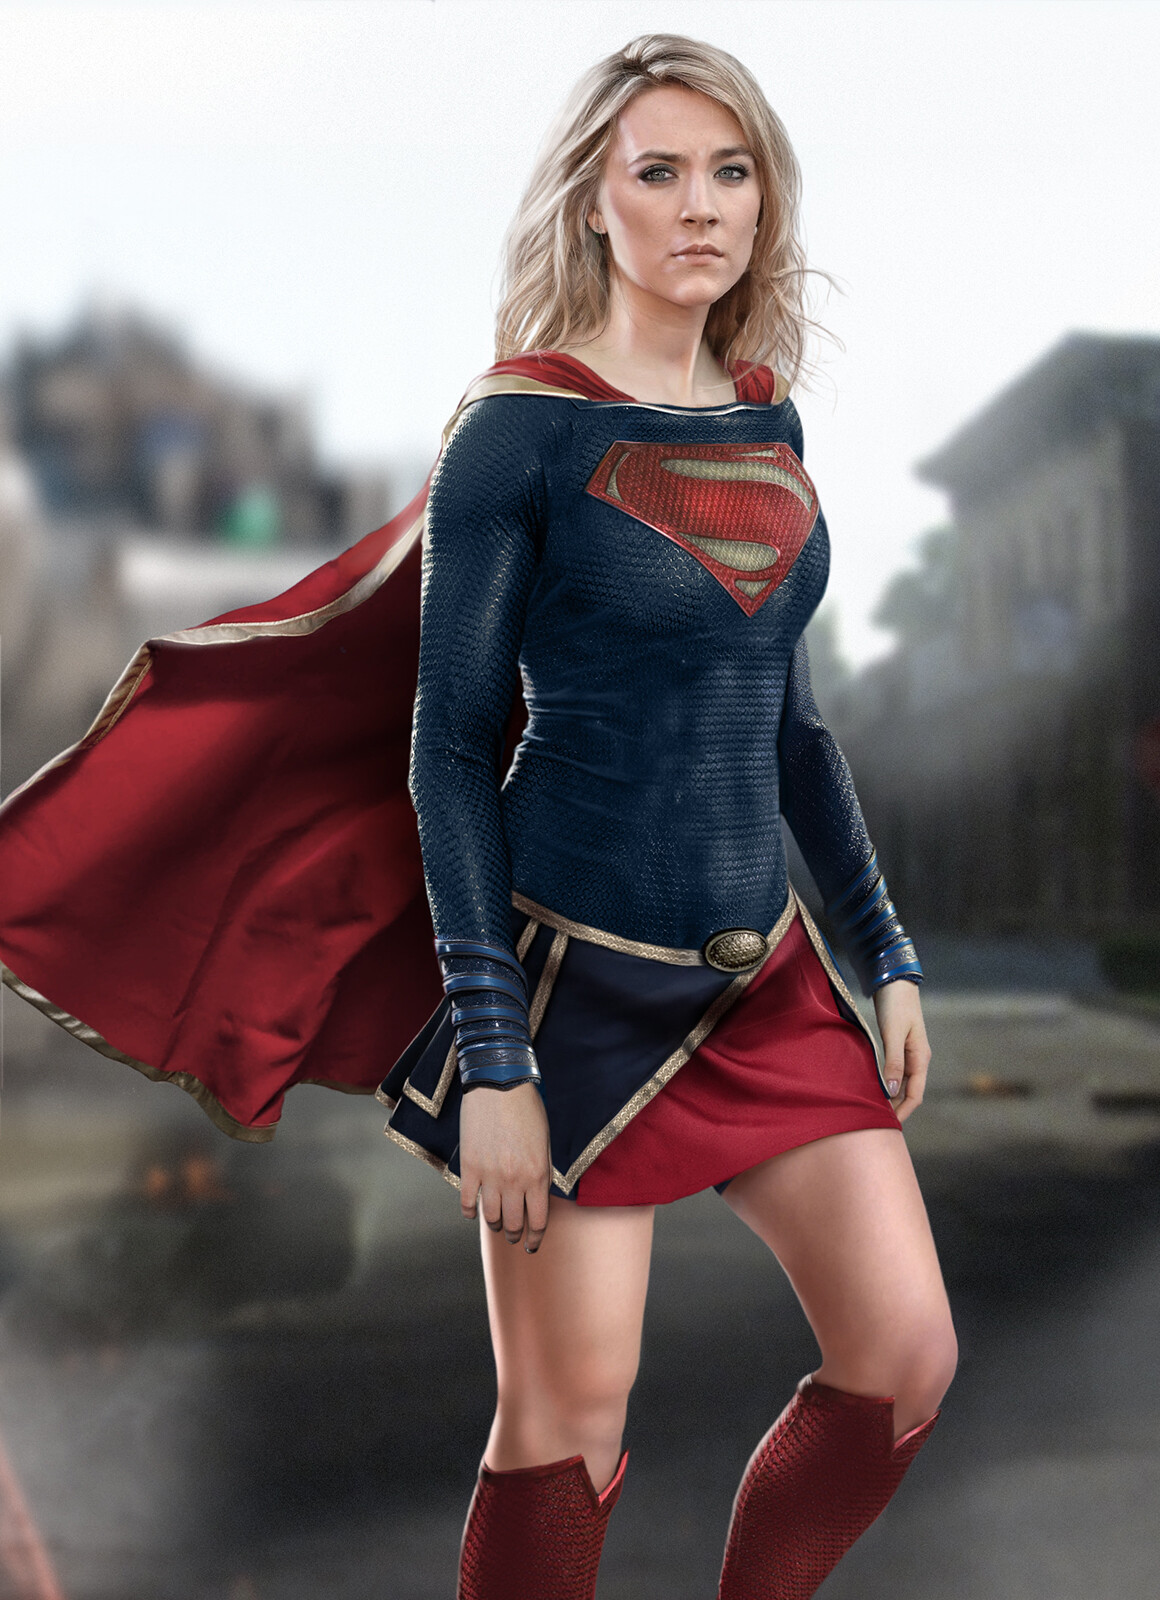 Supergirl movie concept.